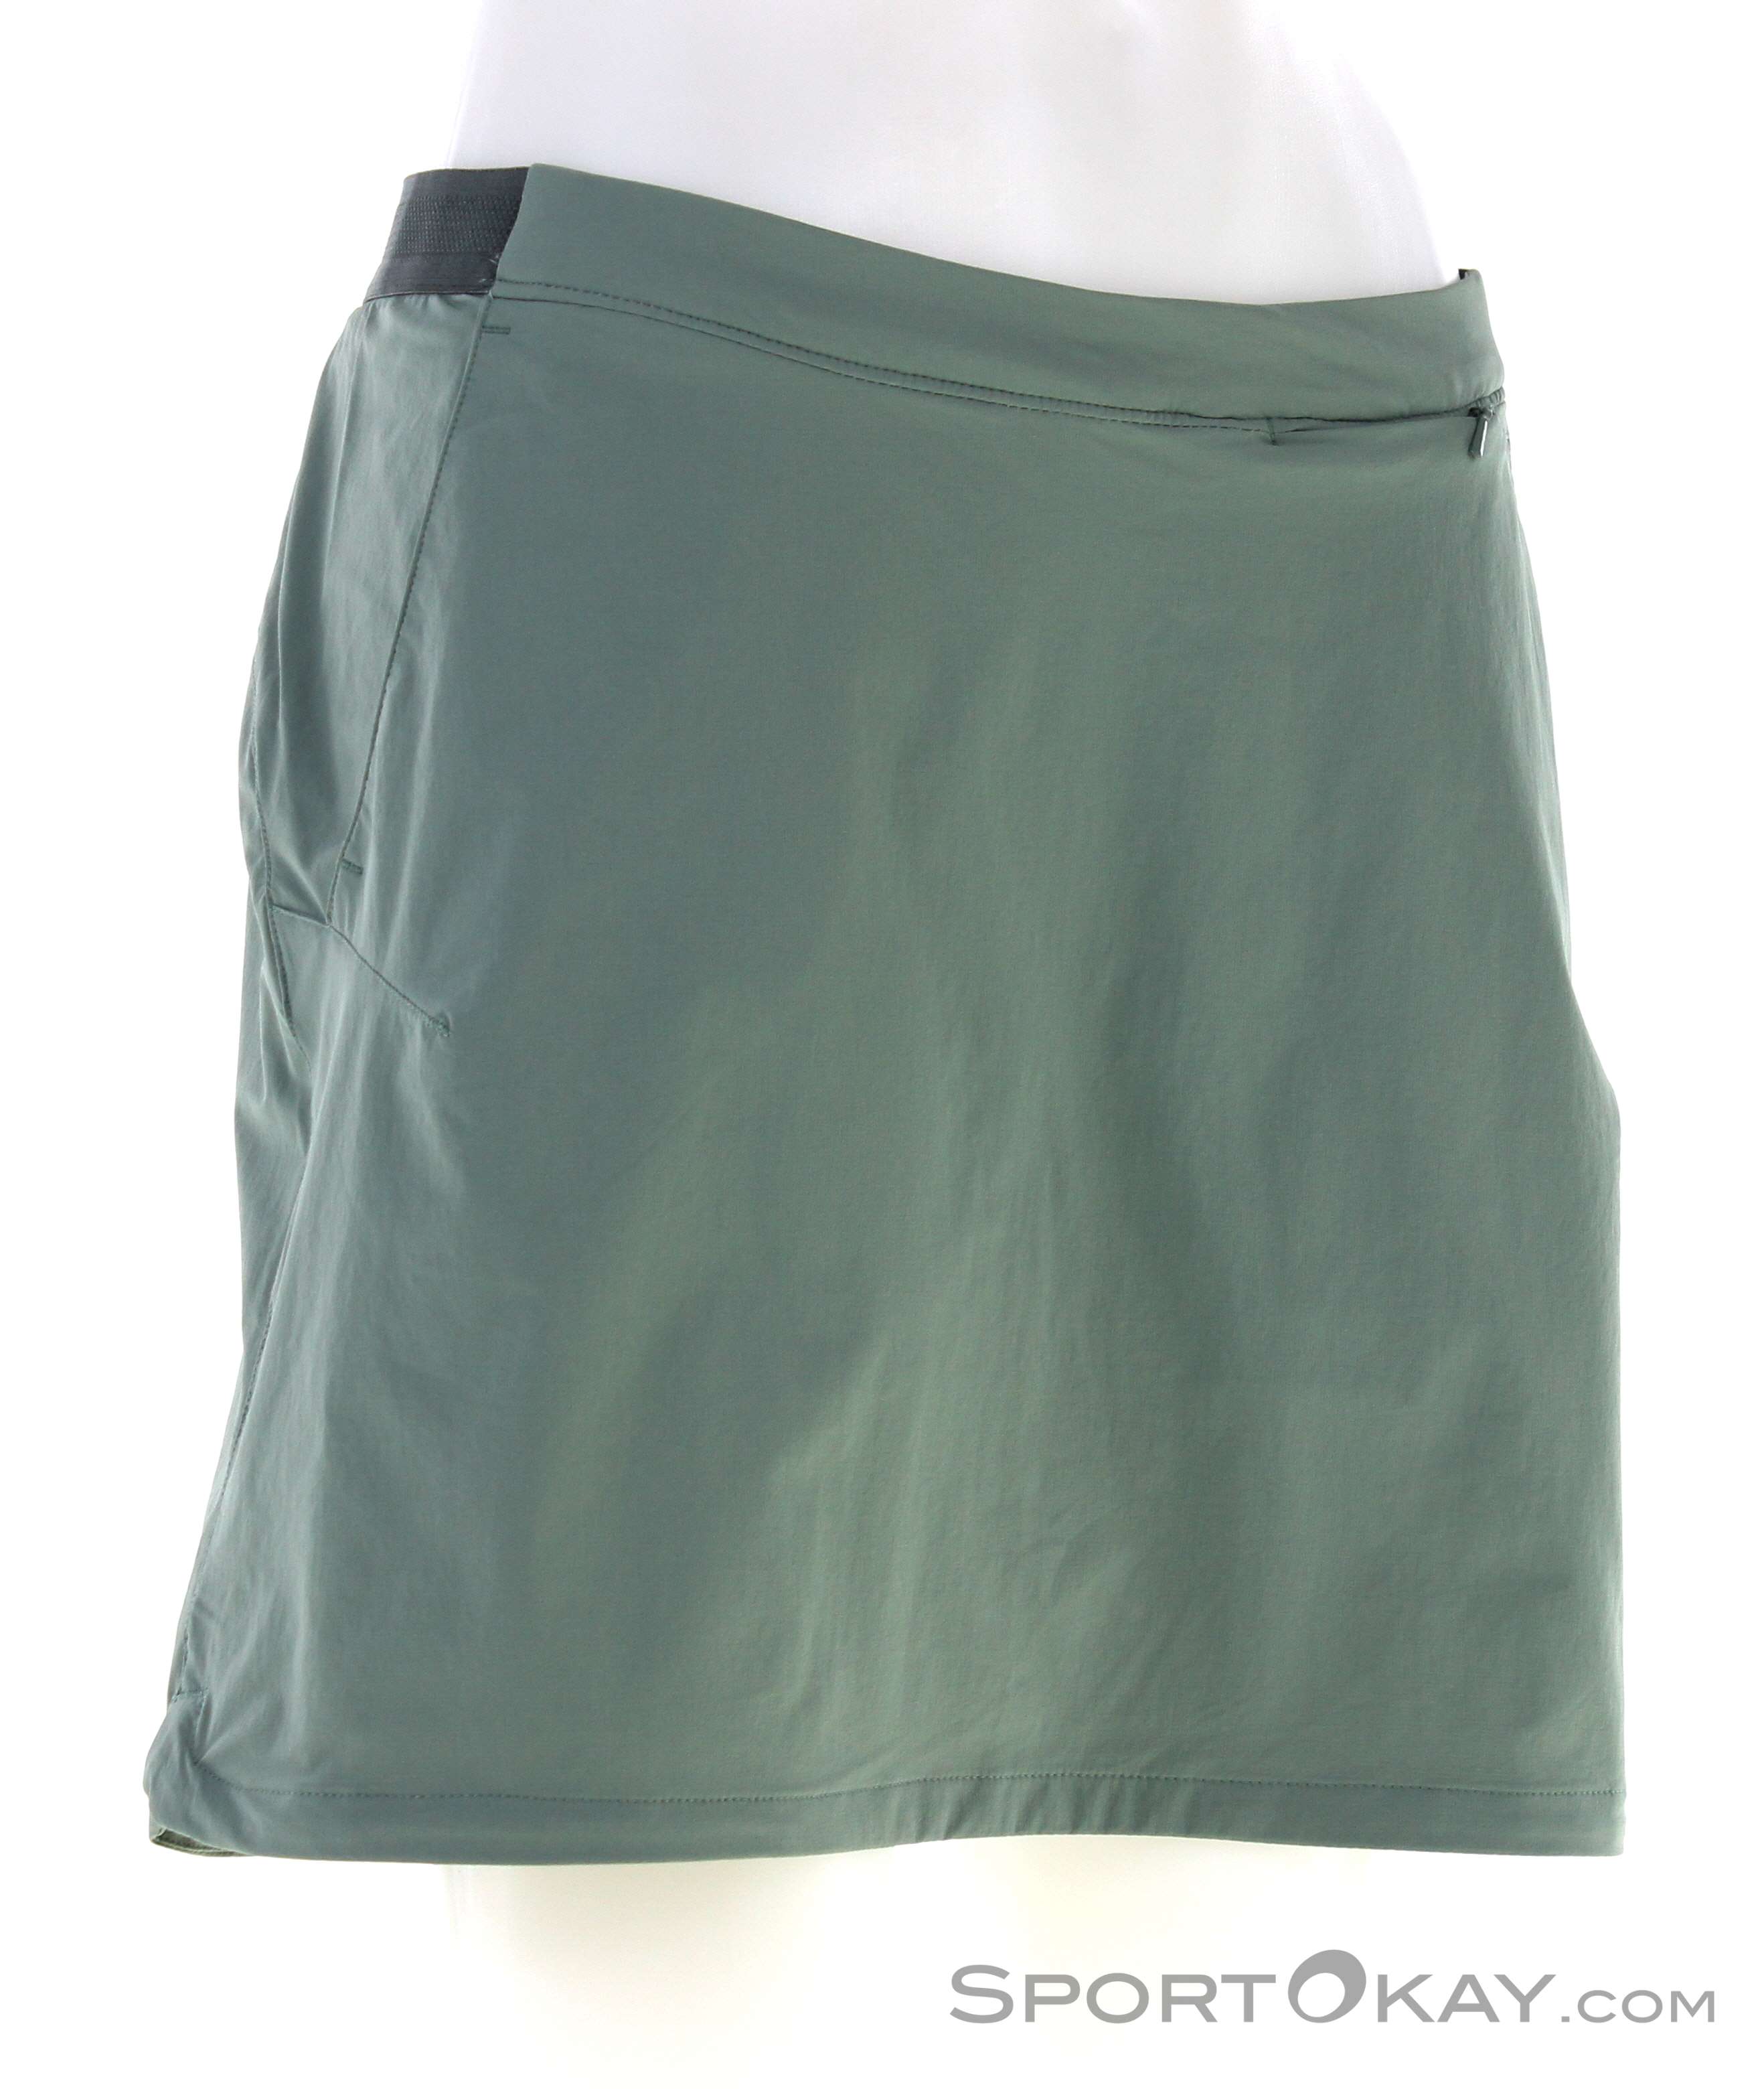 Kaufen Sie die neuesten Artikel im Ausland Jack Wolfskin Hilltop - Clothing Skort - Outdoor Women Skirt Outdoor - Trail Pants - Outdoor All